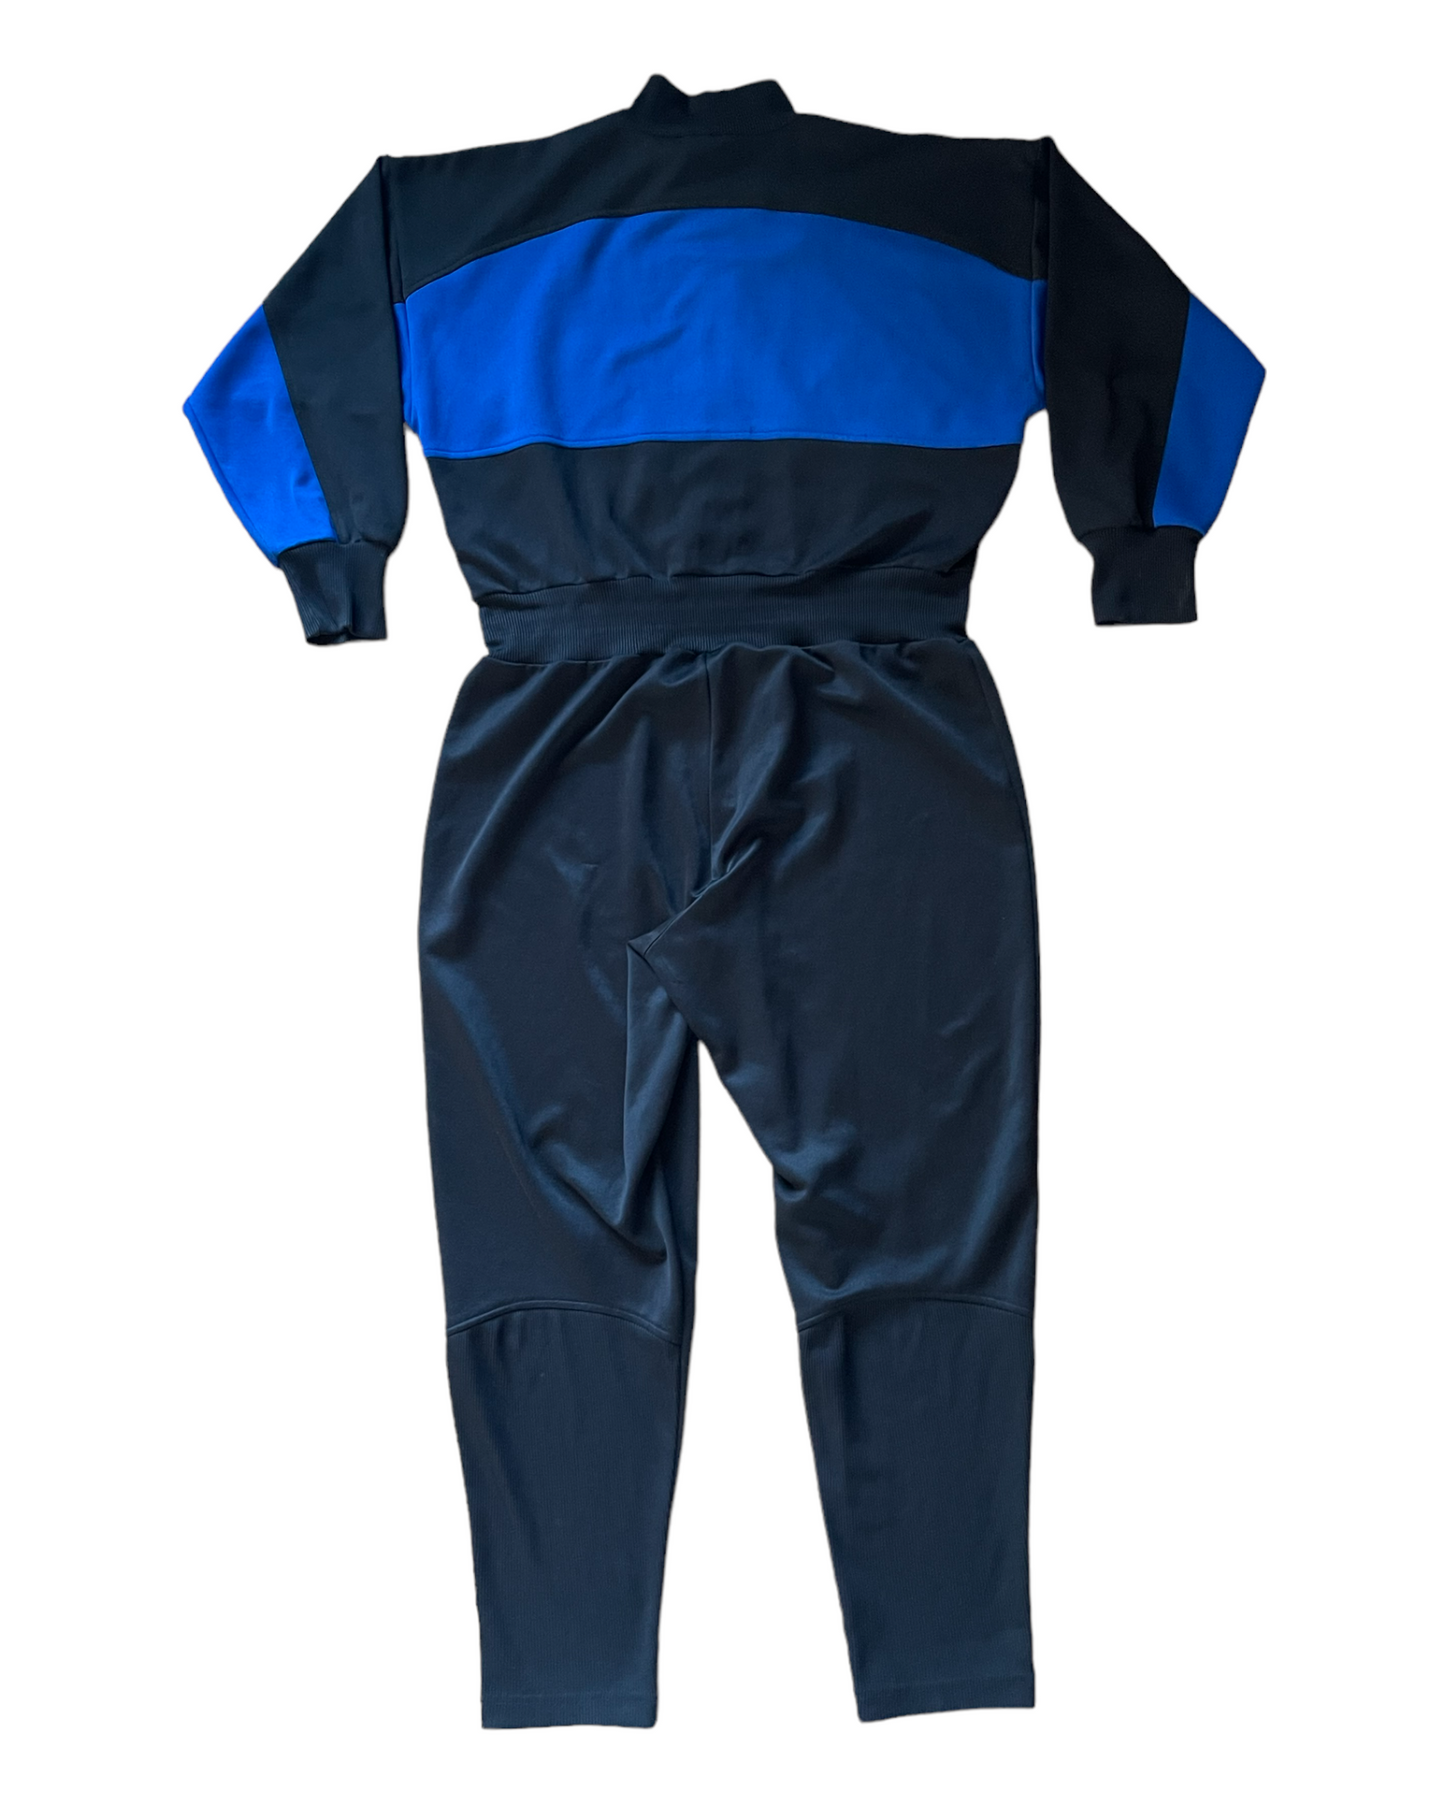 Vintage 90's Adidas Jumpsuit Blue Black Size L 